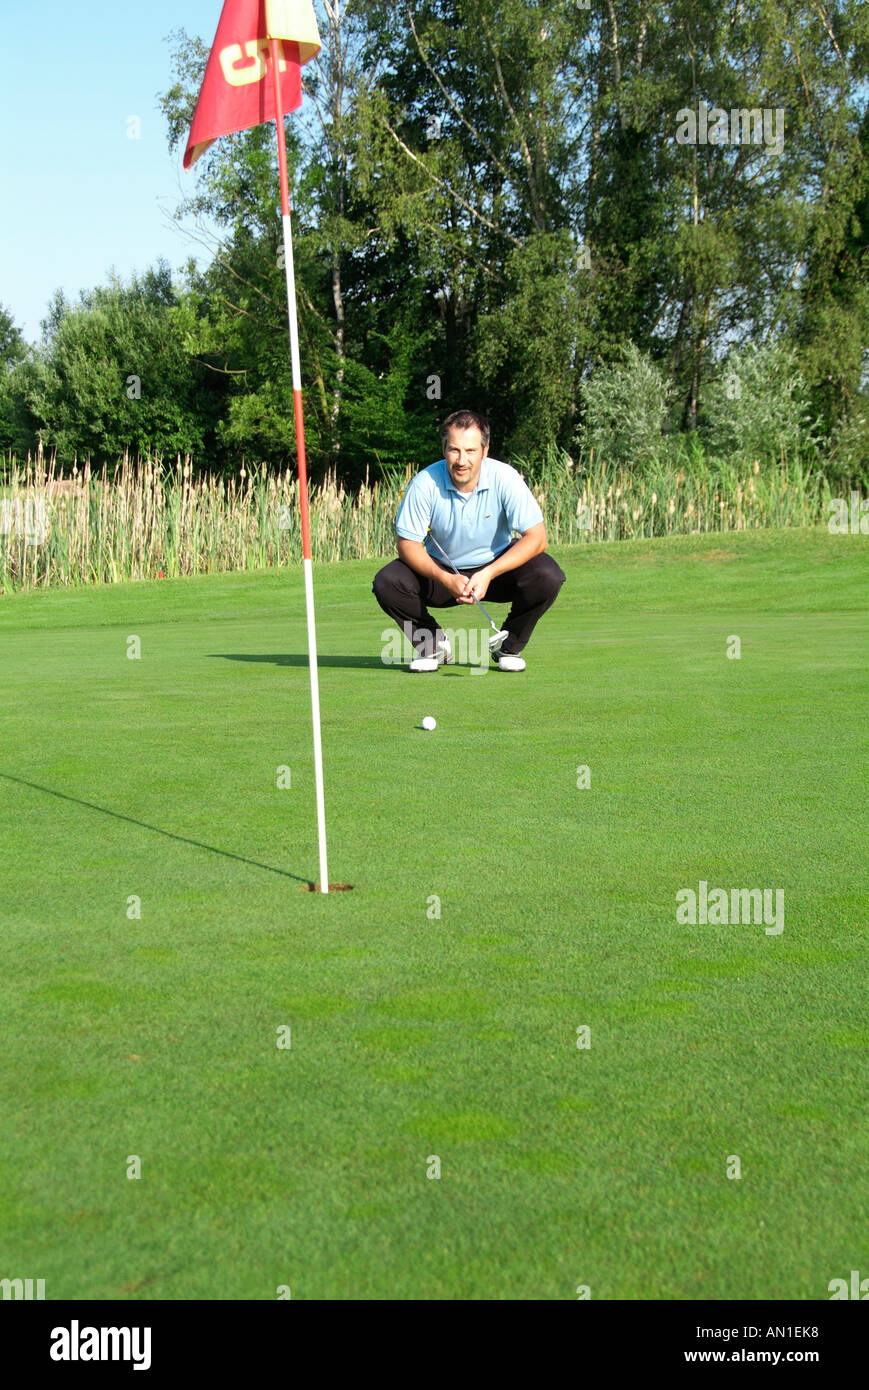 Golf Le golf de golf, un joueur de golf en se concentrant sur son trou sur greenfee Banque D'Images